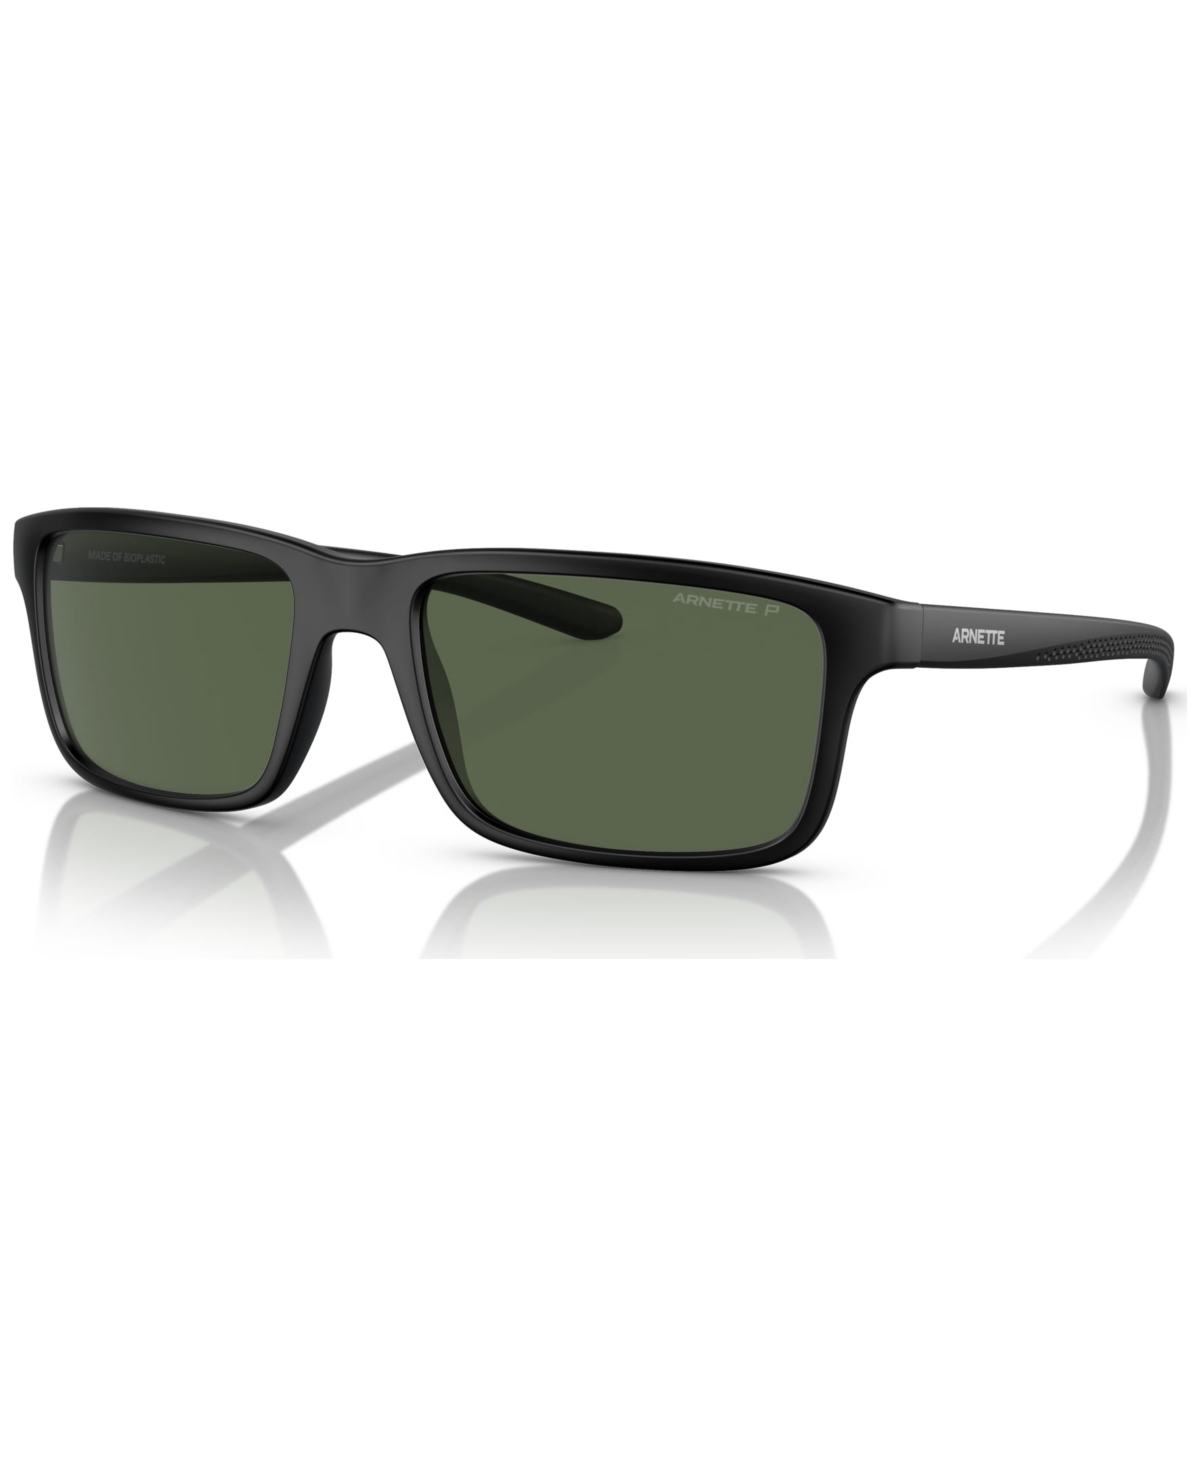 Arnette Men's Polarized Sunglasses, An432257-p 57 In Matte Black